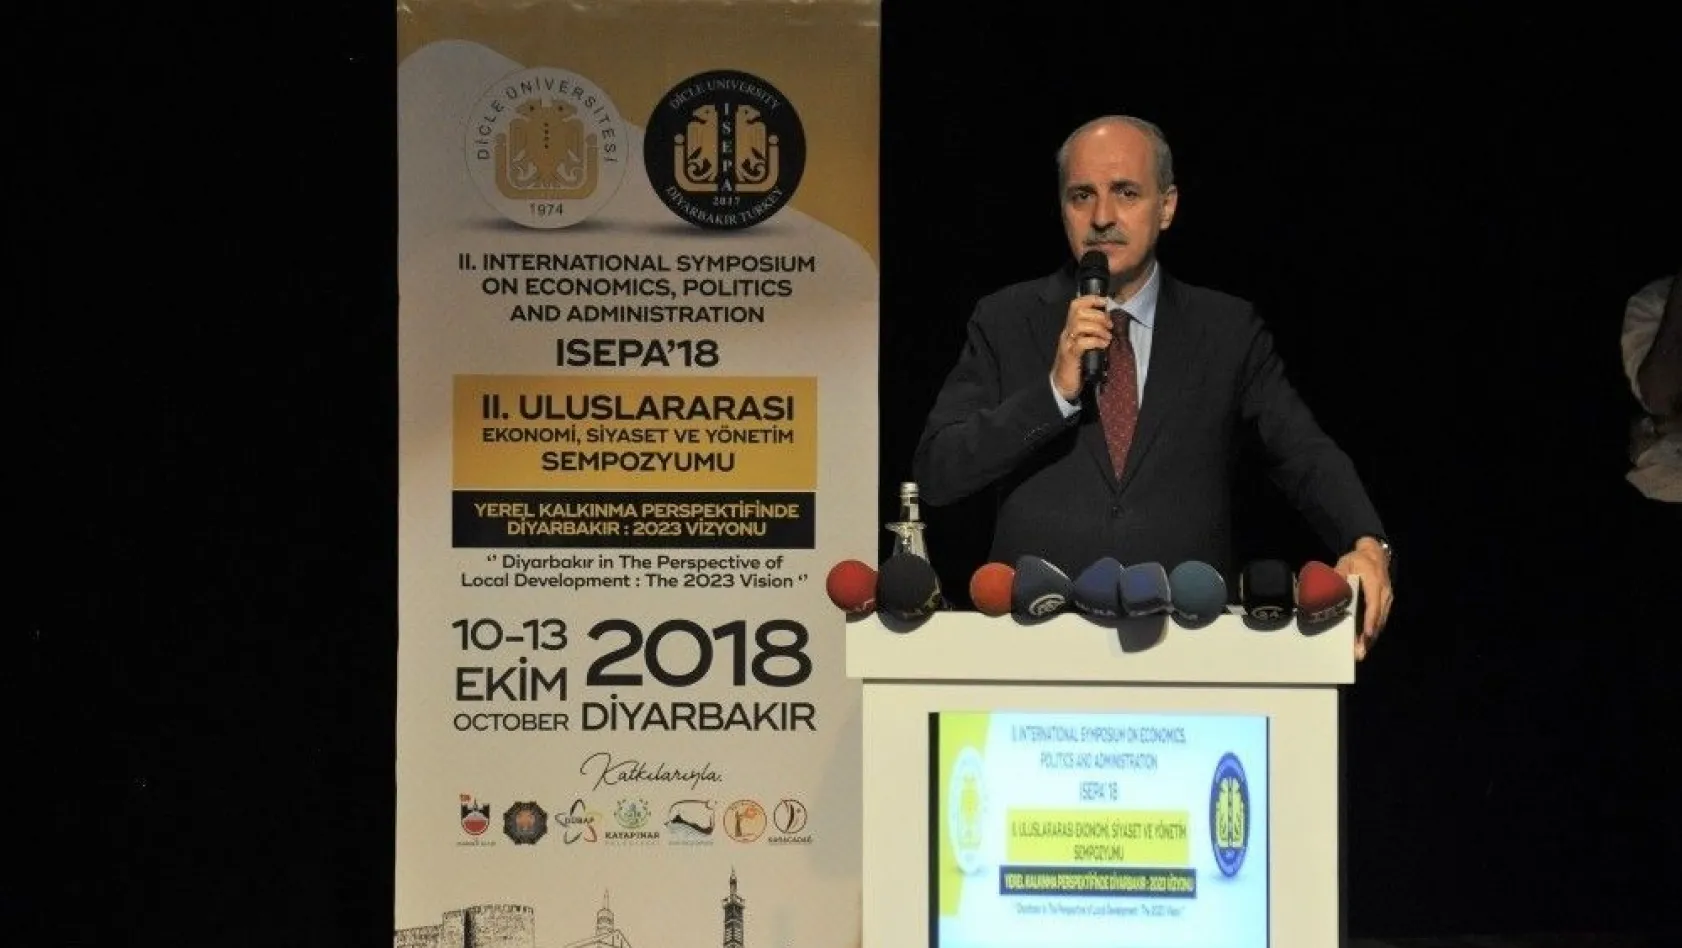 Diyarbakır'da '2'nci Uluslararası Ekonomik, Siyaset Yönetimi Sempozyumu'
